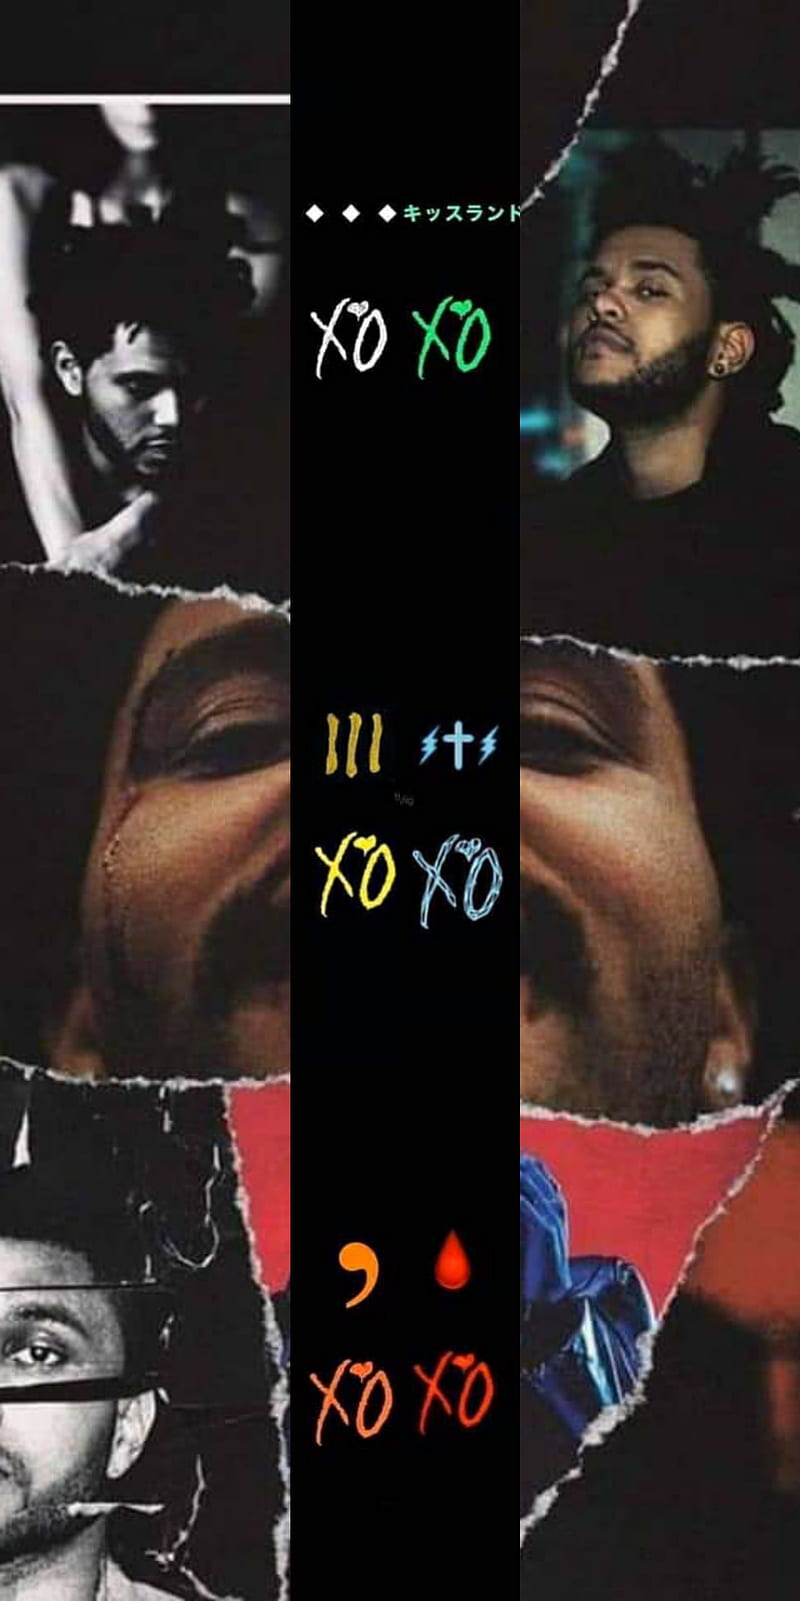 The Weeknd HD Wallpaper